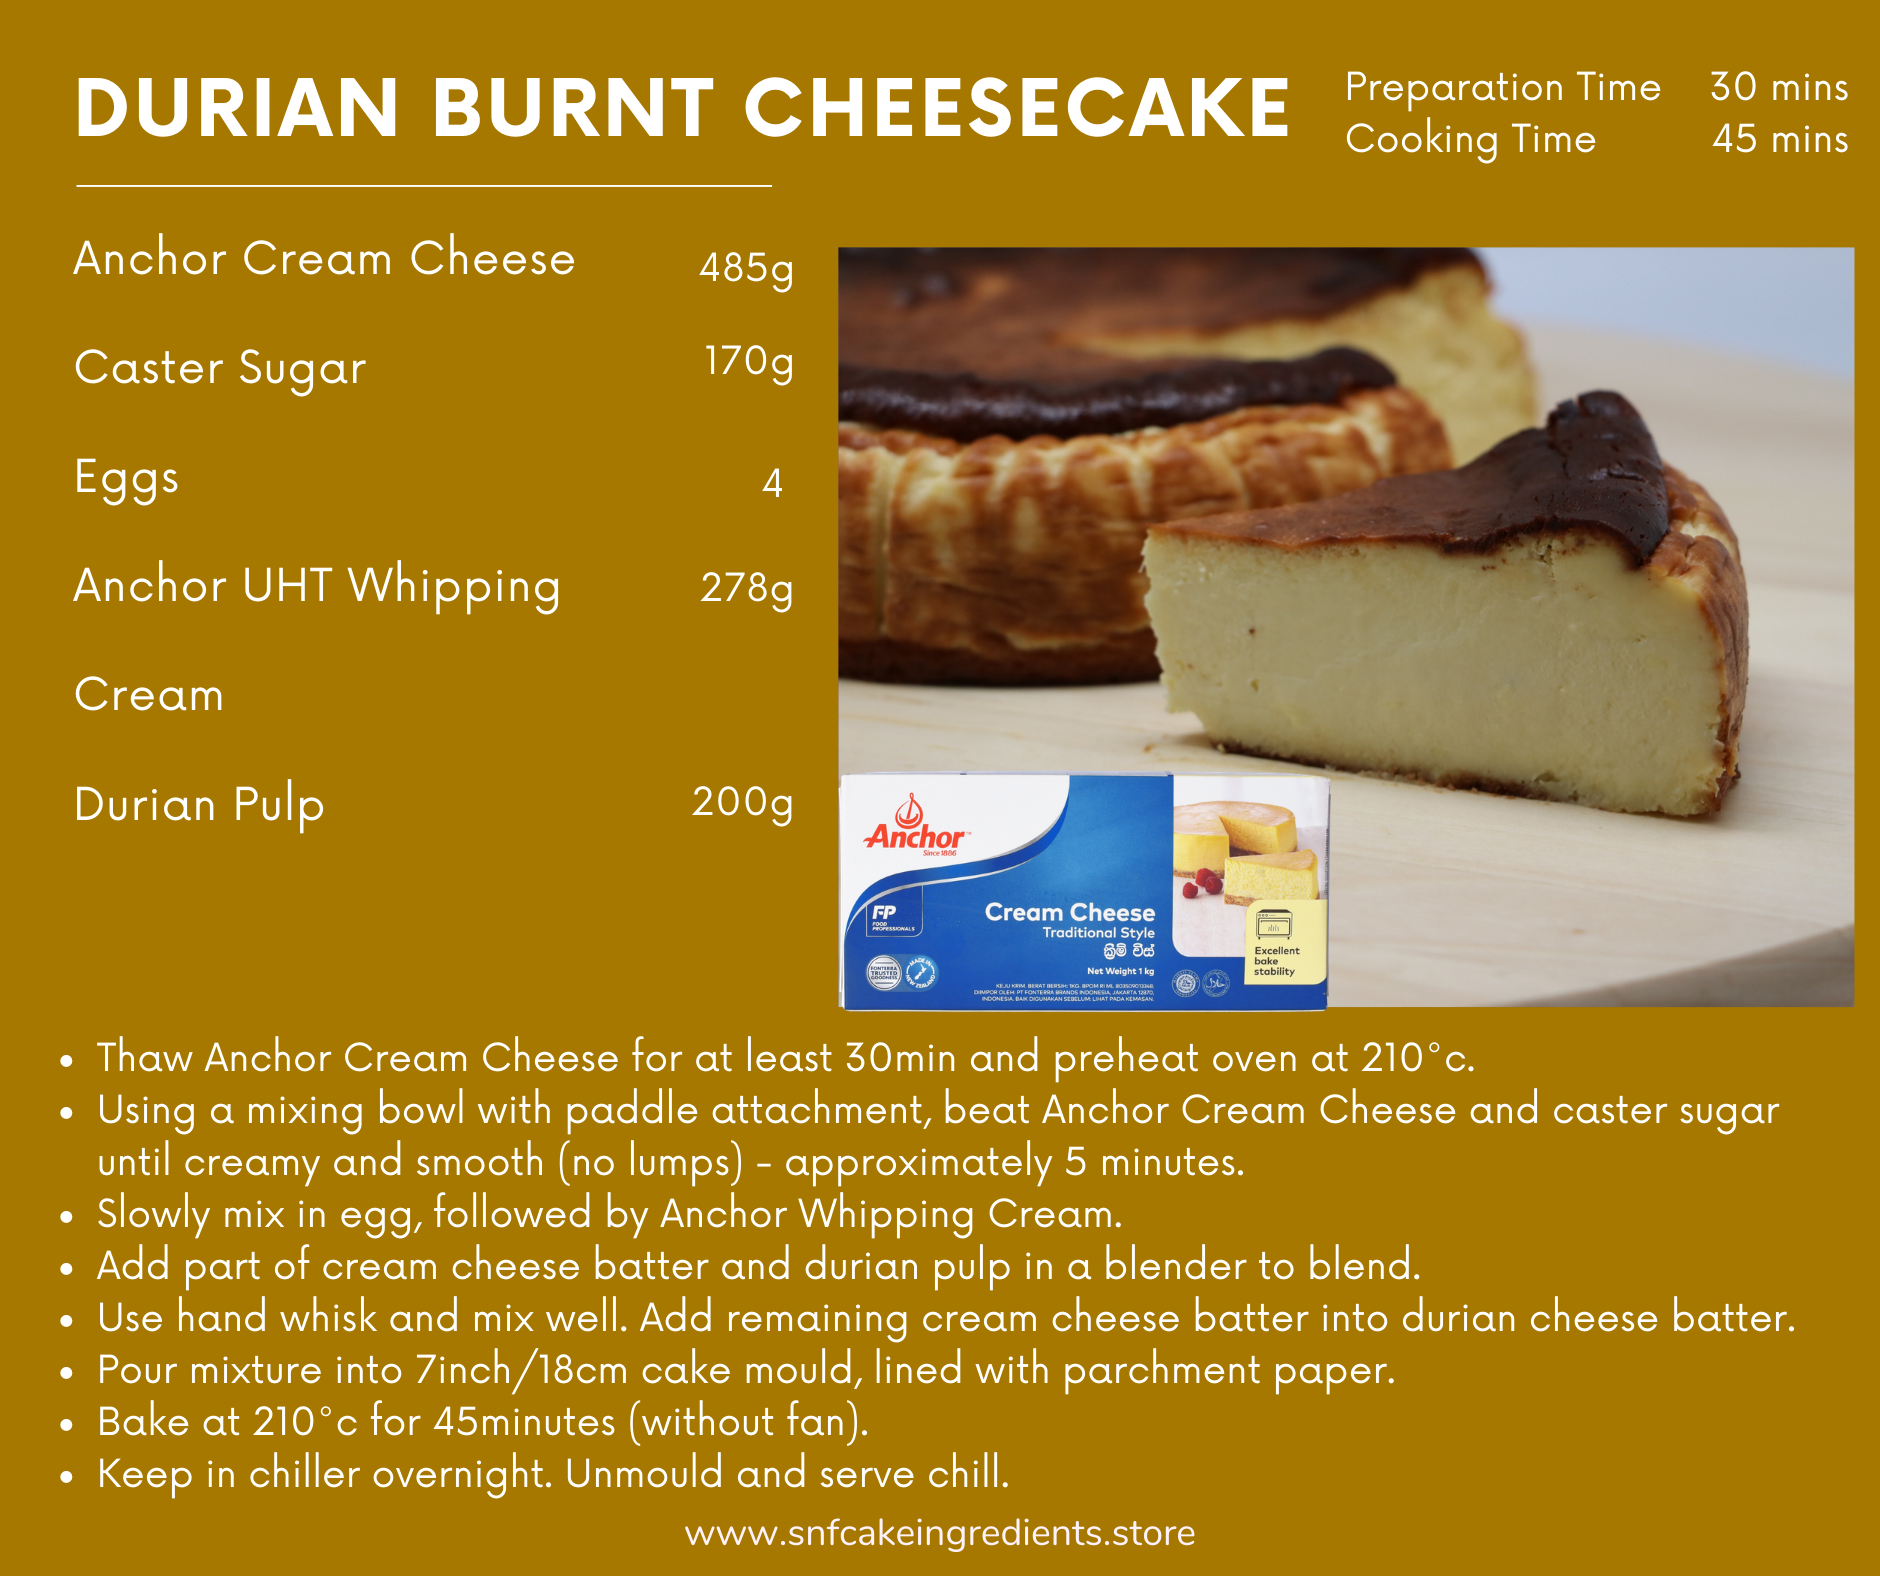 Durian Burnt Cheesecake